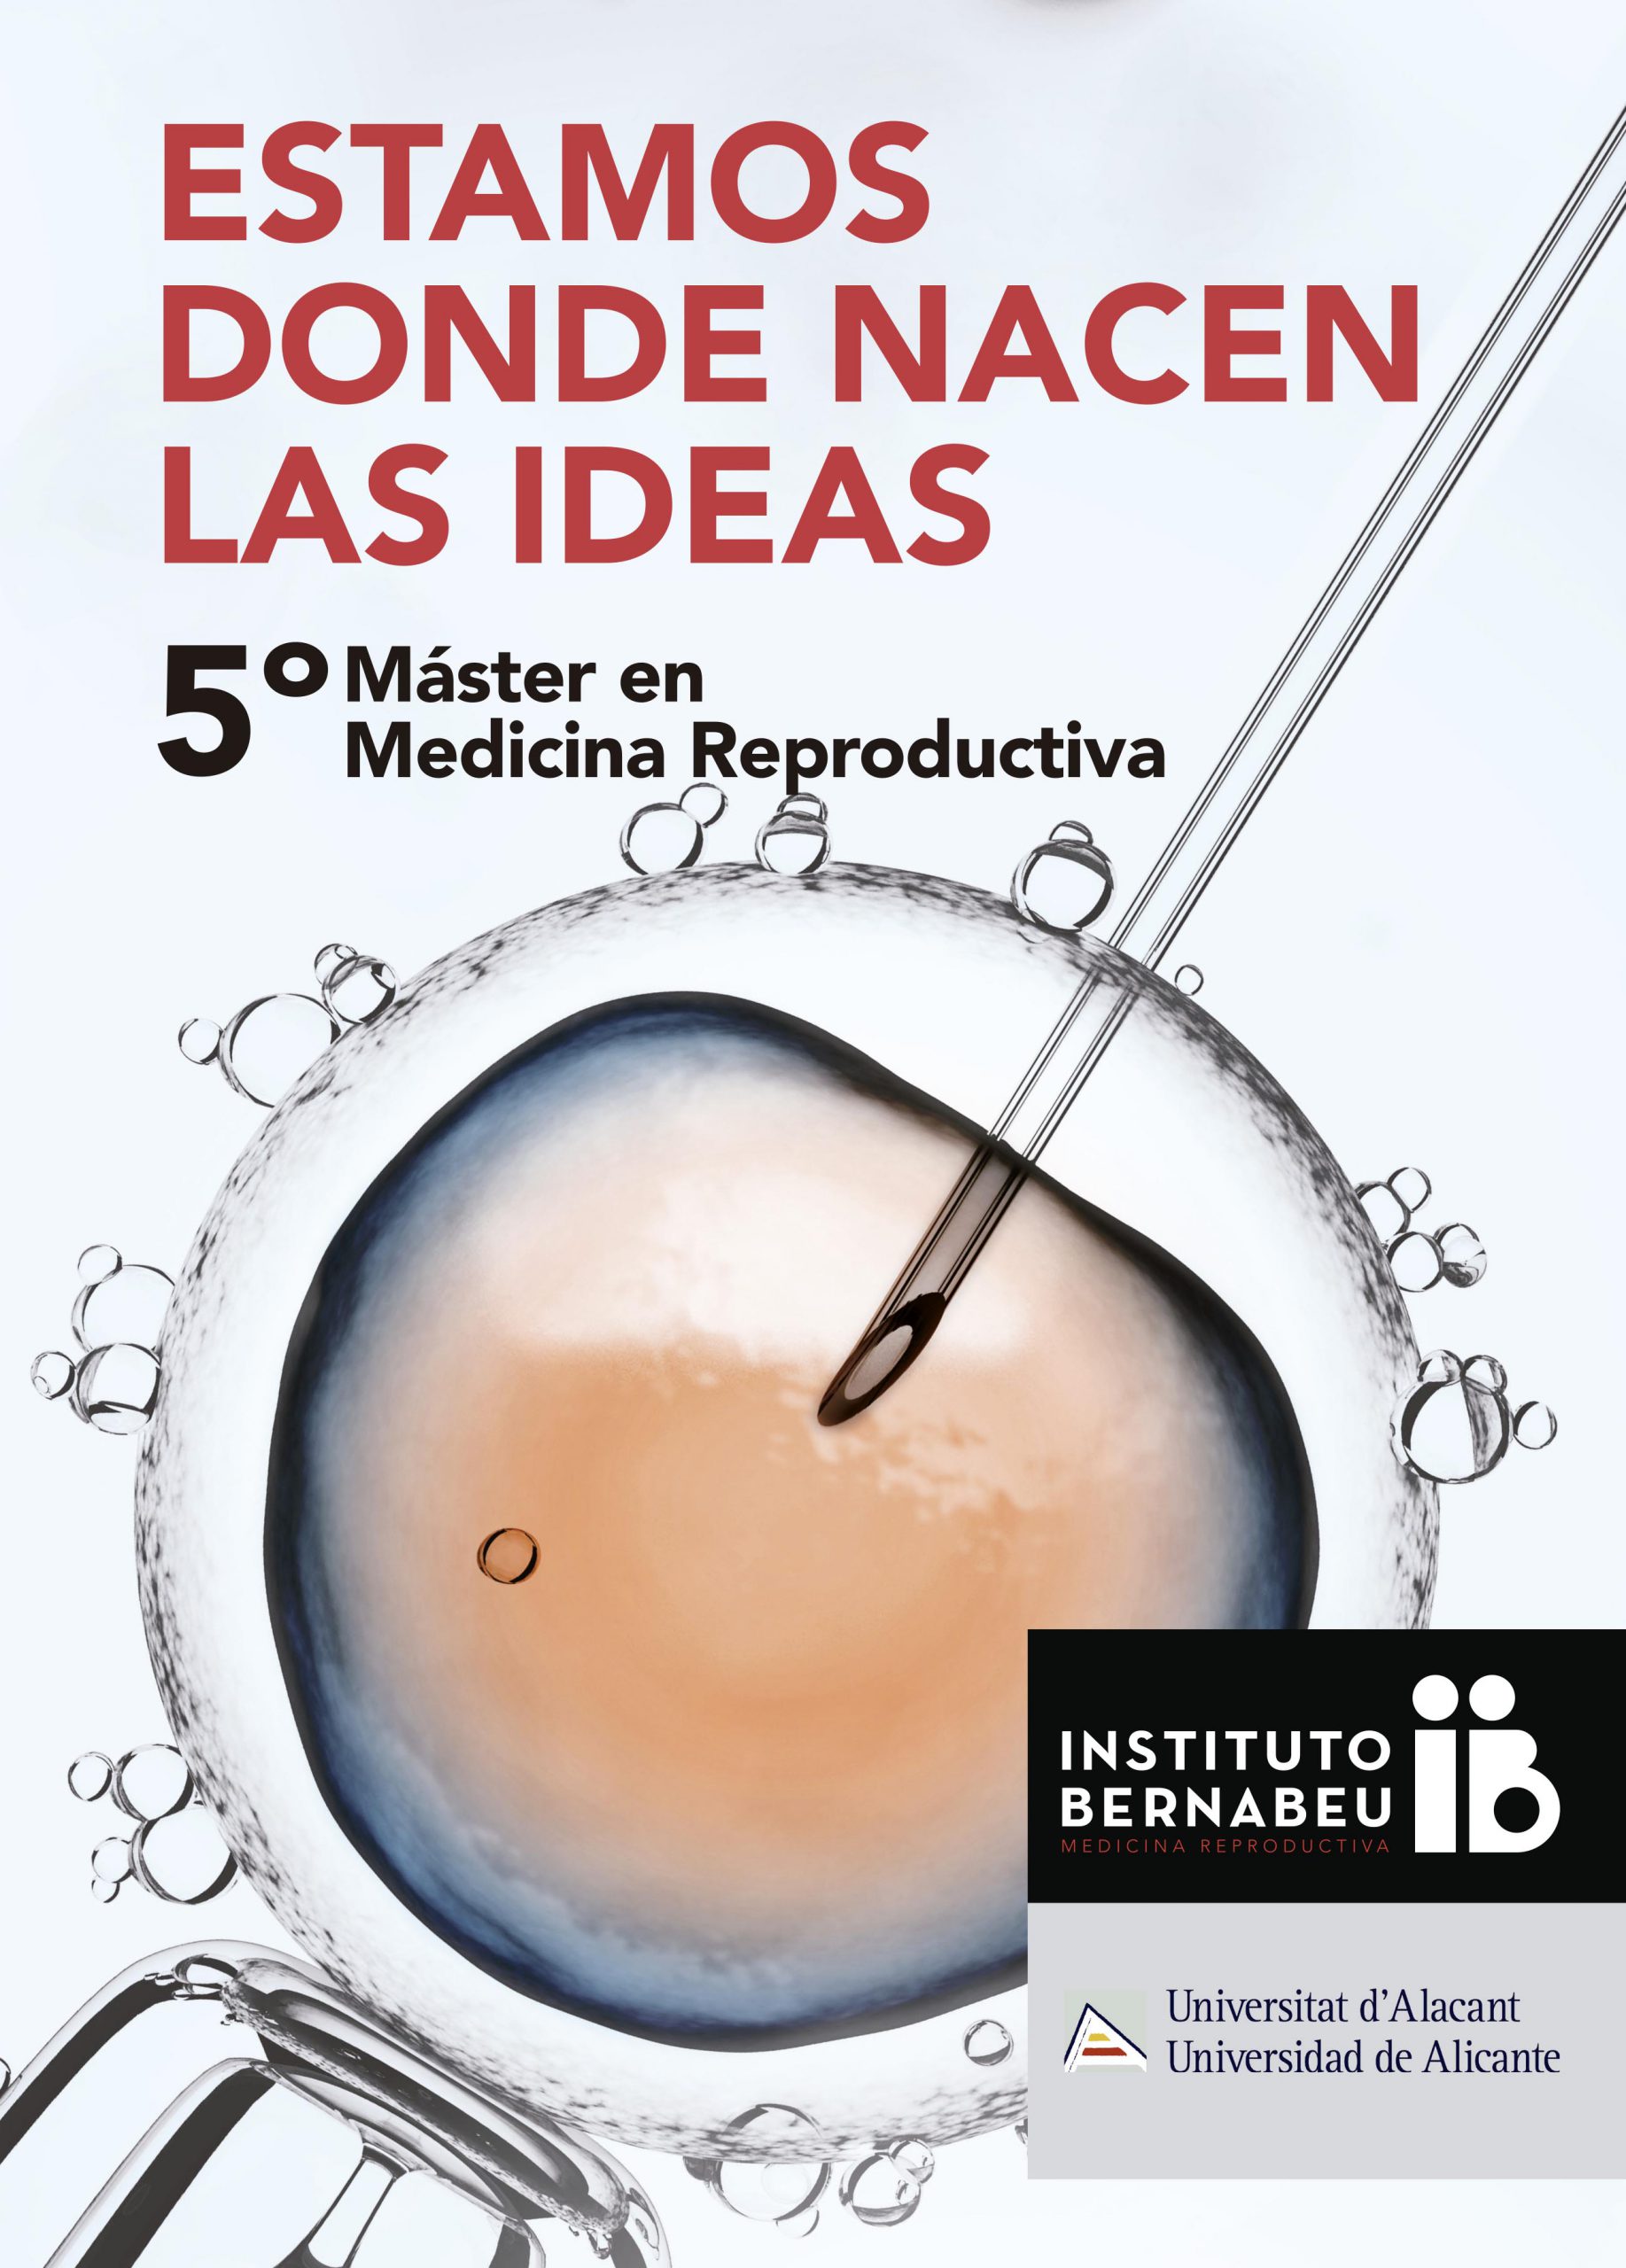 V Máster en Medicina Reproductiva Universidad de Alicante – Instituto Bernabeu